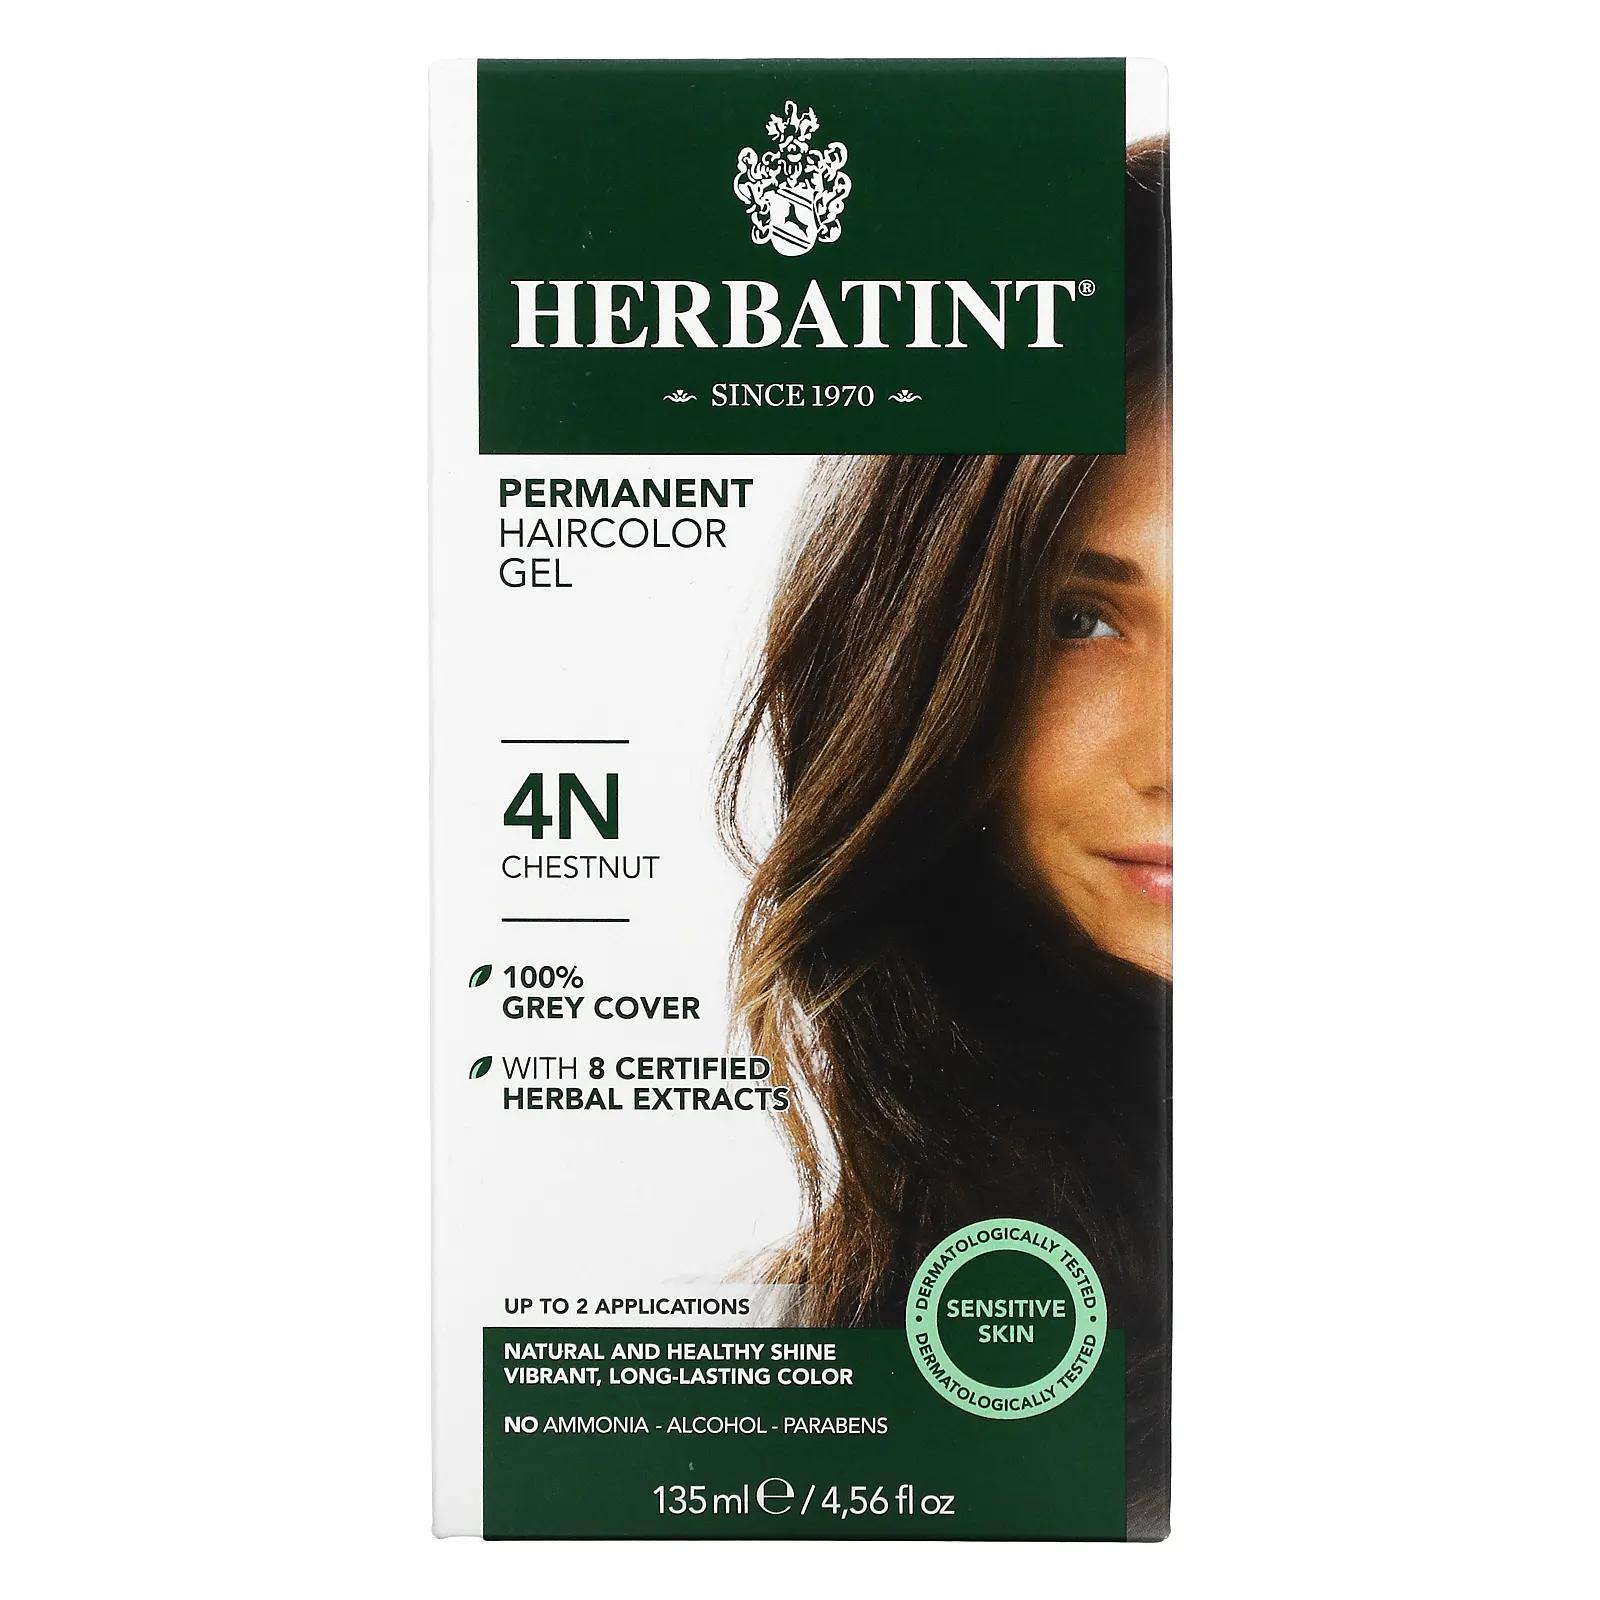 Herbatint Перманентная растительная краска-гель для волос 4N каштан 4,56 жидкой унции (135 мл) herbatint перманентная краска гель для волос 4r медный каштан 4 56 жидкой унции 135 мл